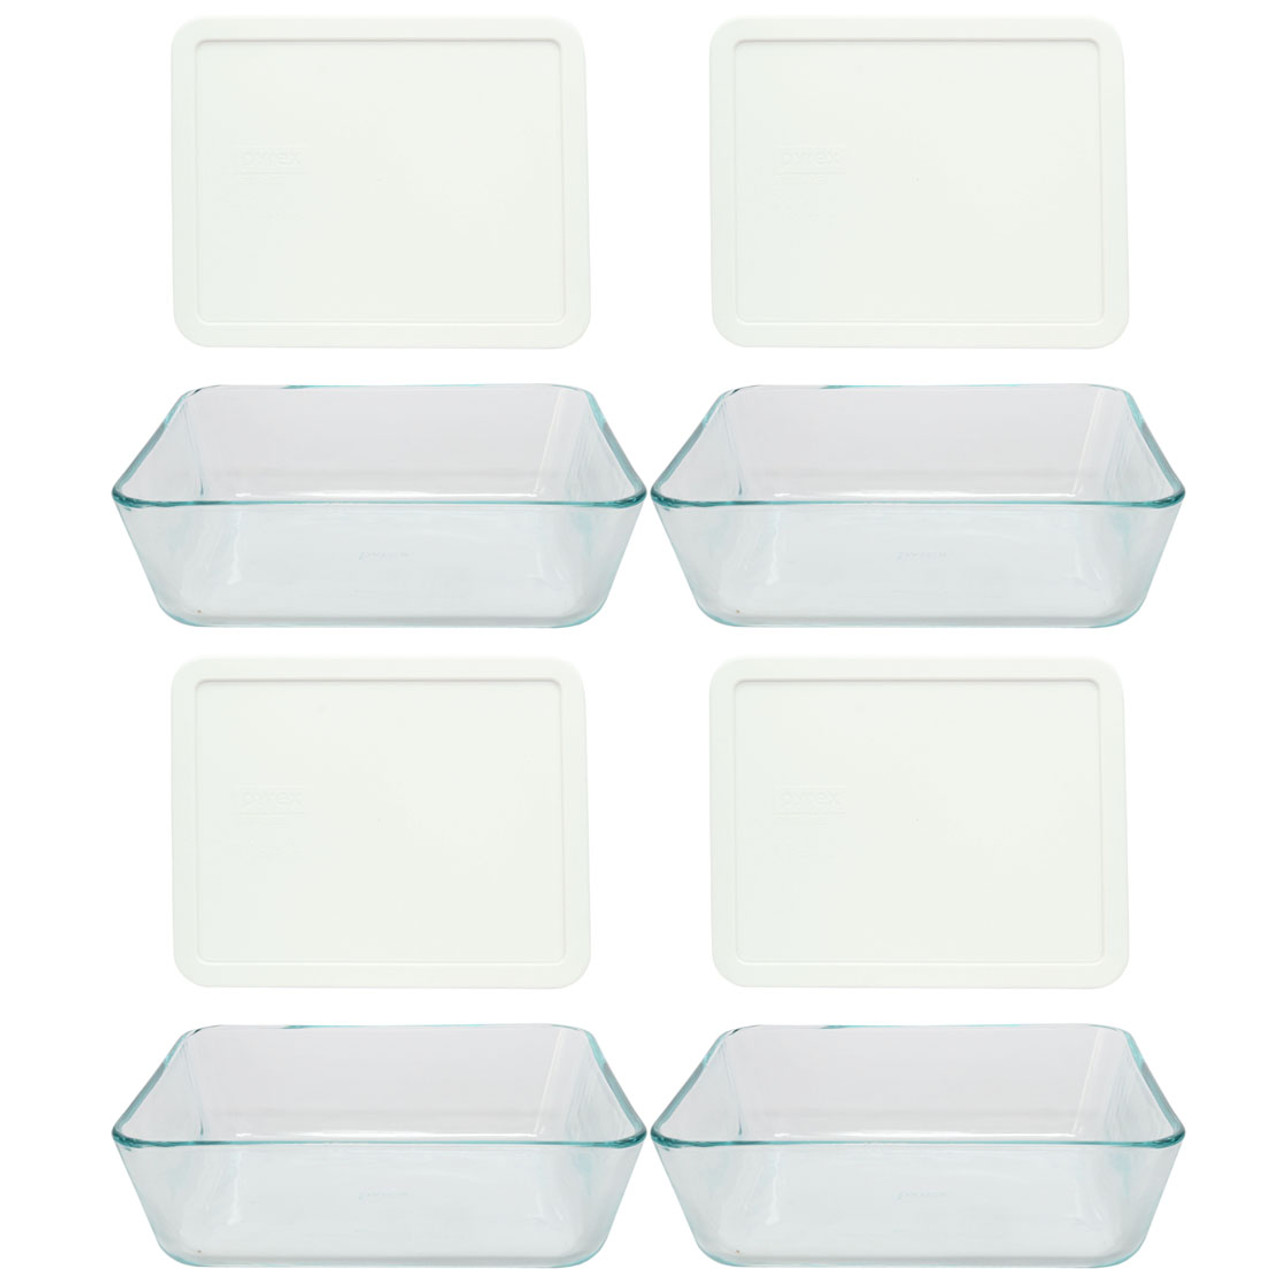 Pyrex Mealbox 2.1 Cup Rectangular Glass Food Storage : Target